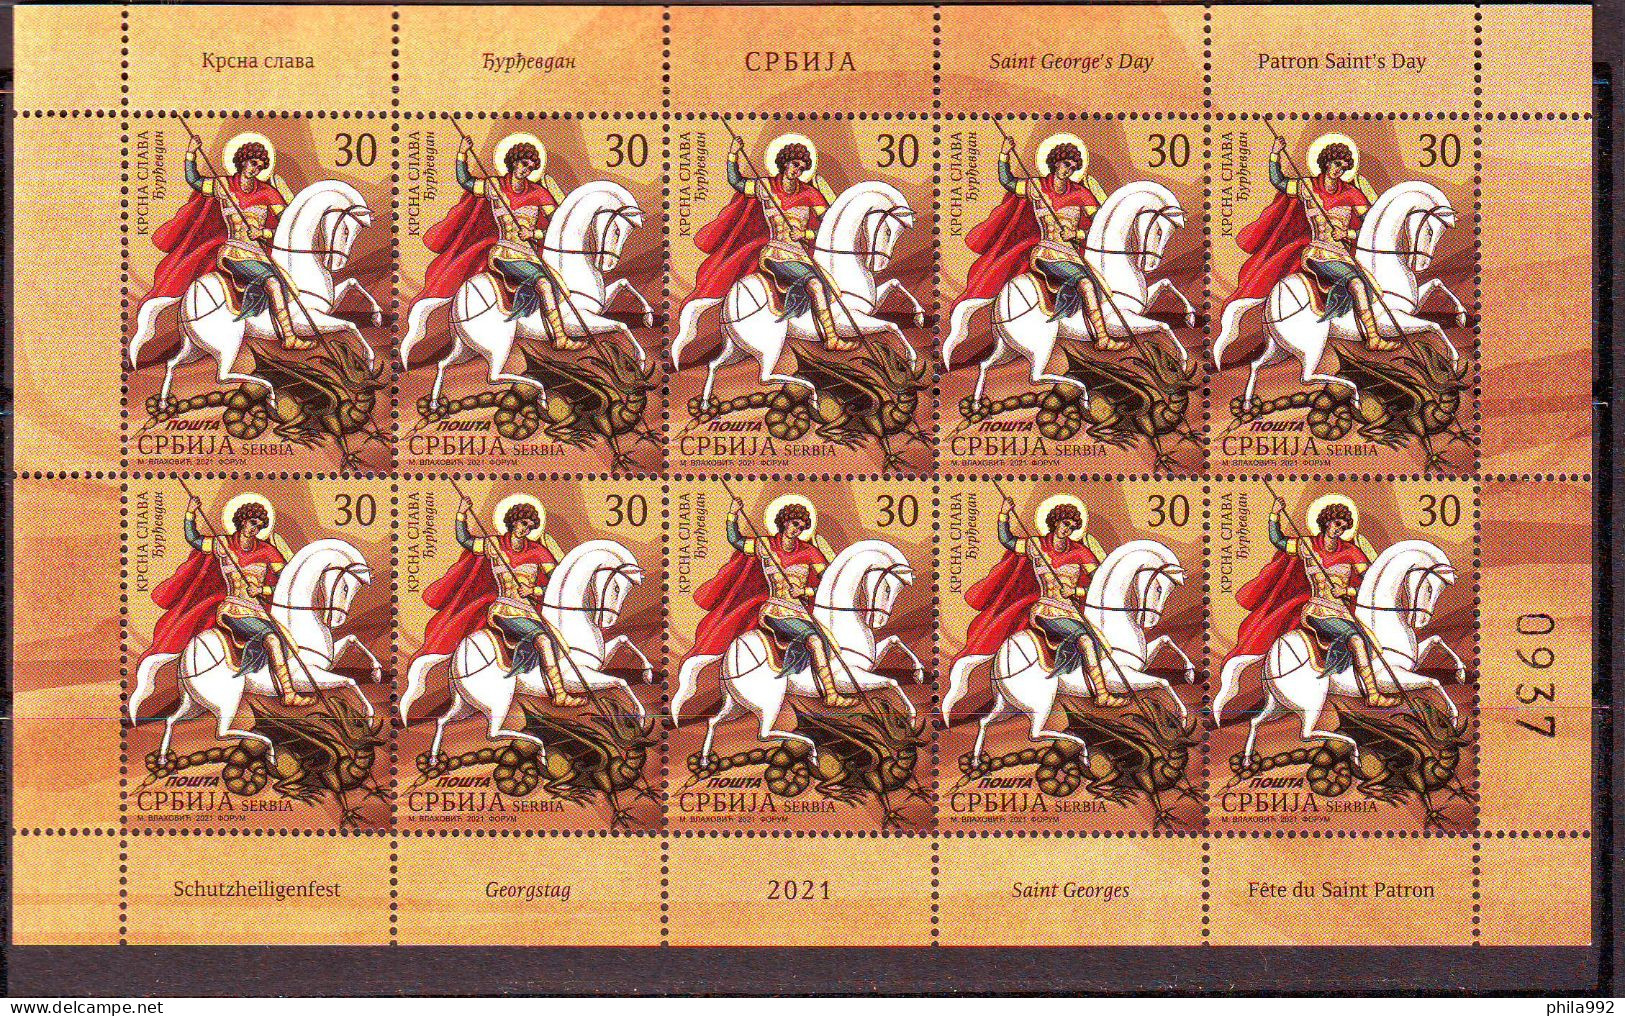 SERBIA 2021 Patron Saint's Day Mini Sheet (10) Mi.No. 1038 MNH - Serbia